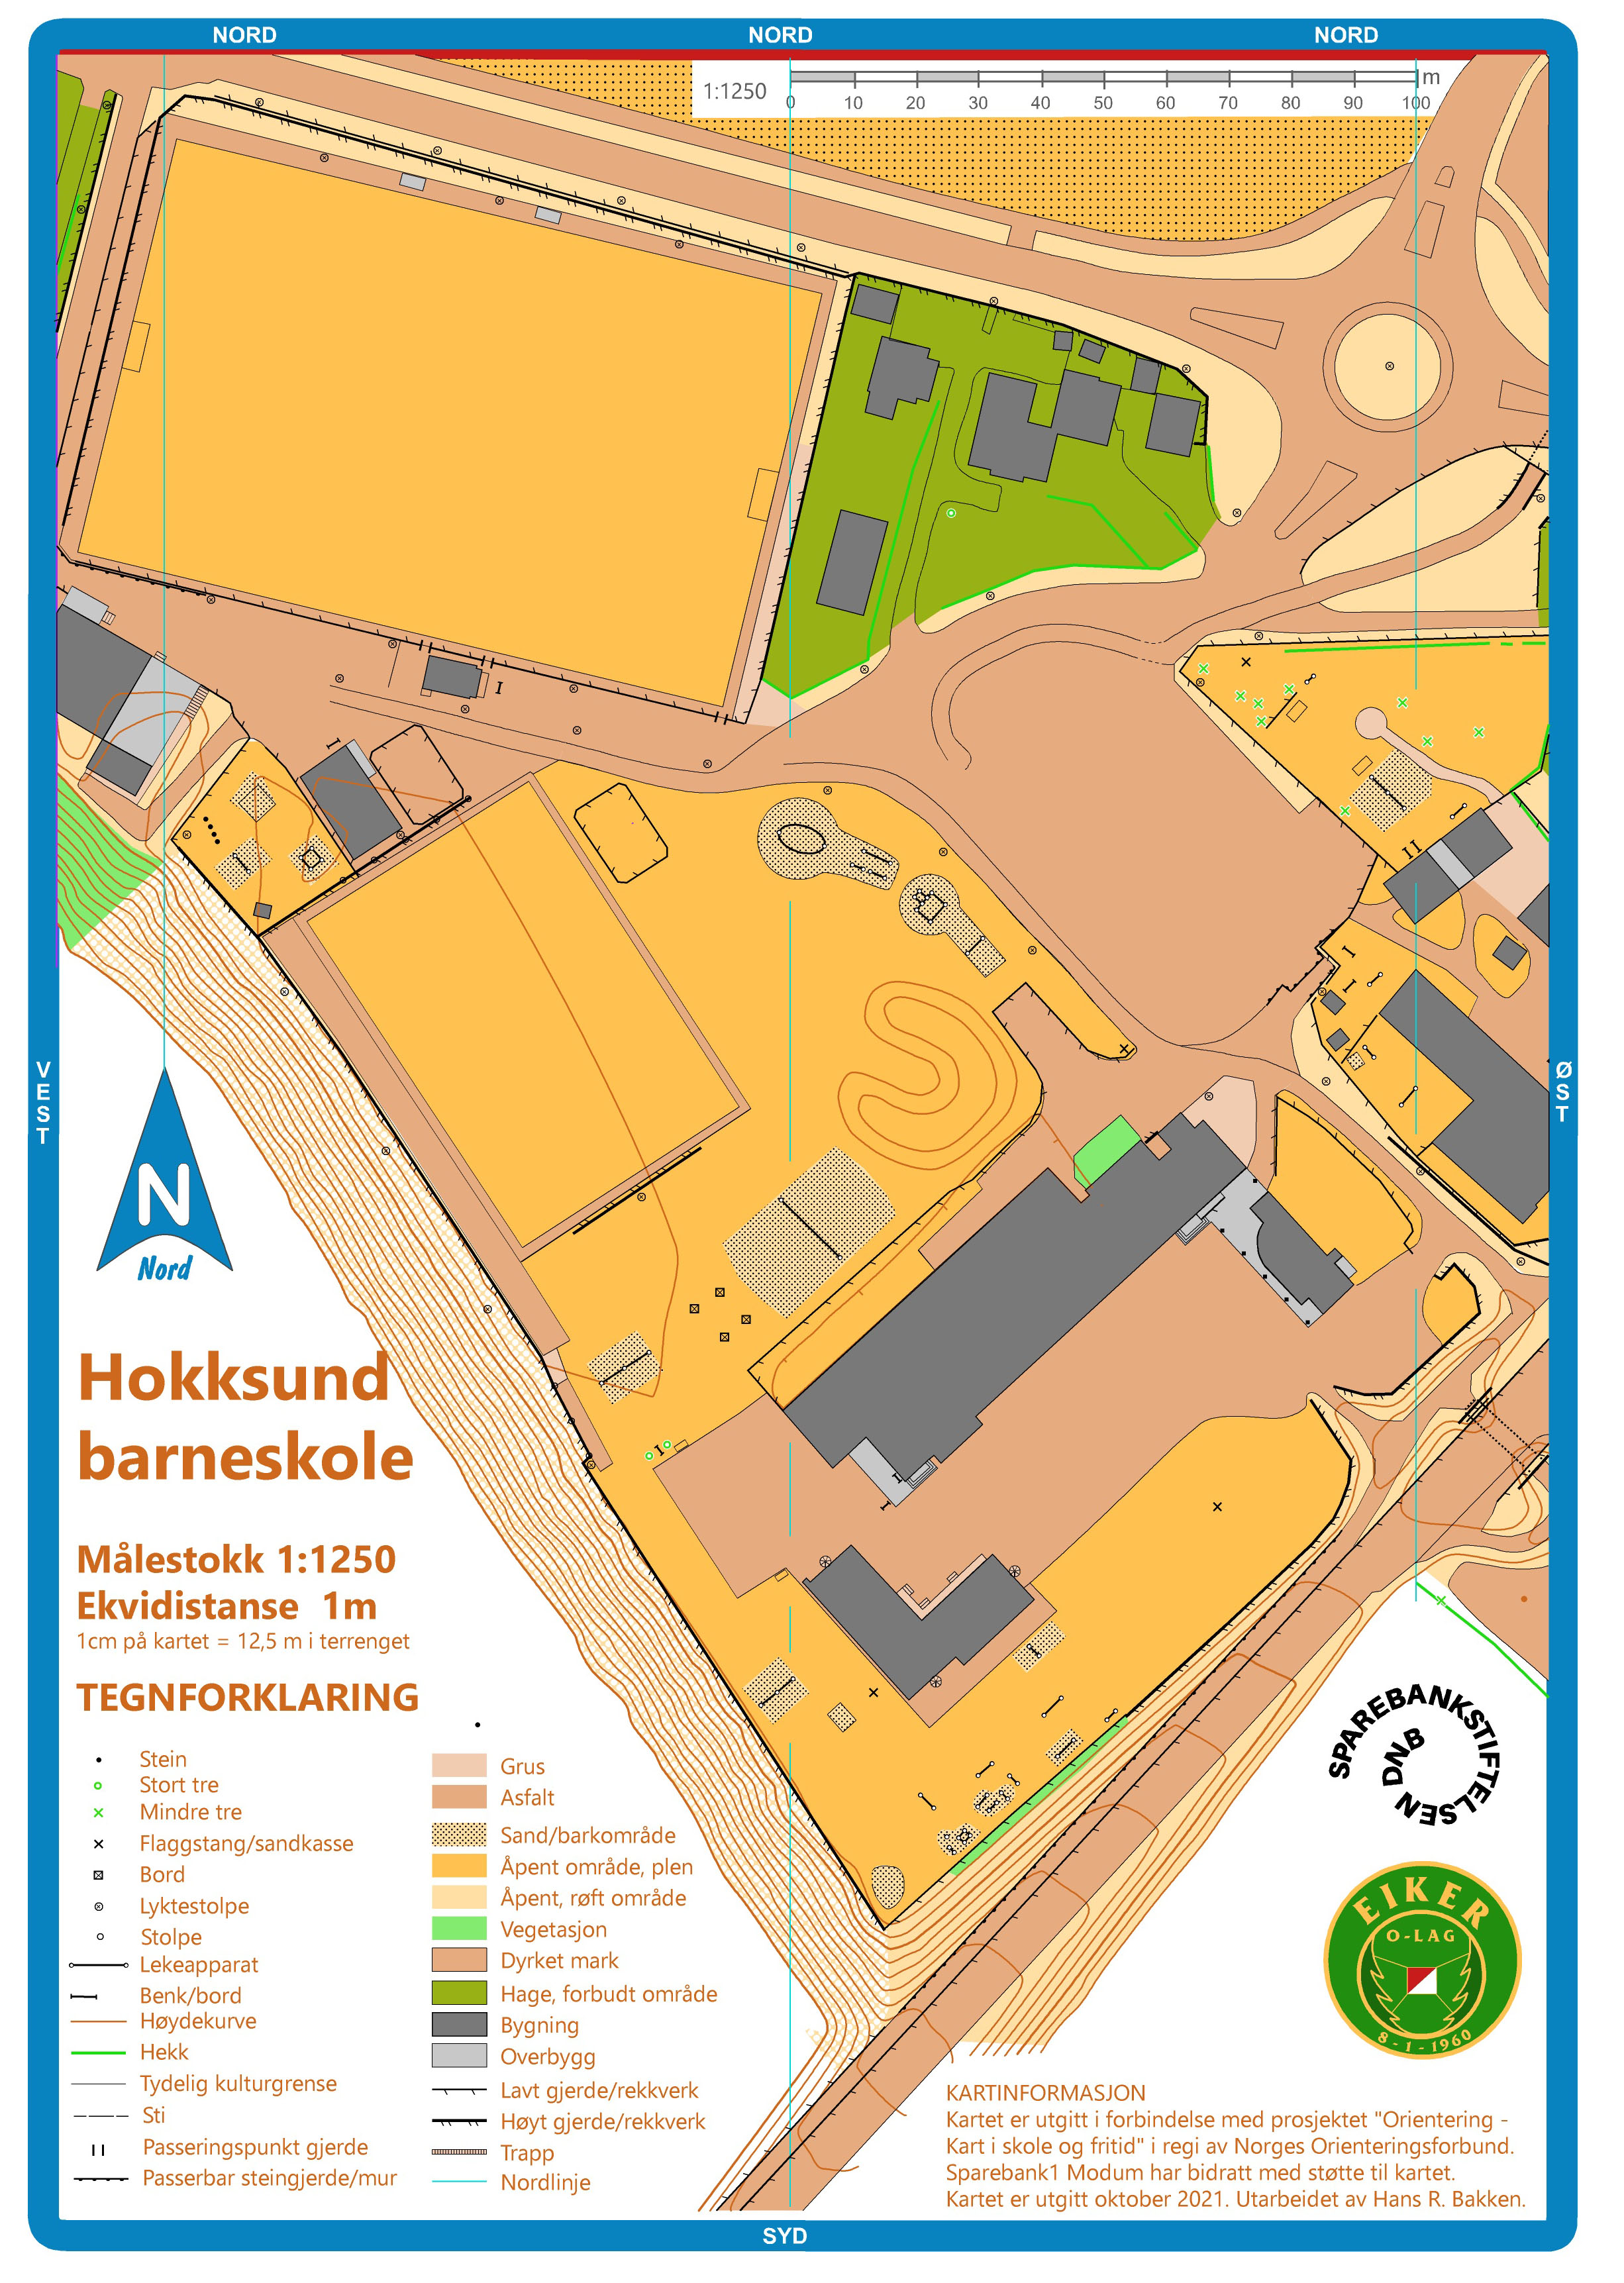 Hokksund barneskole (01/10/2021)